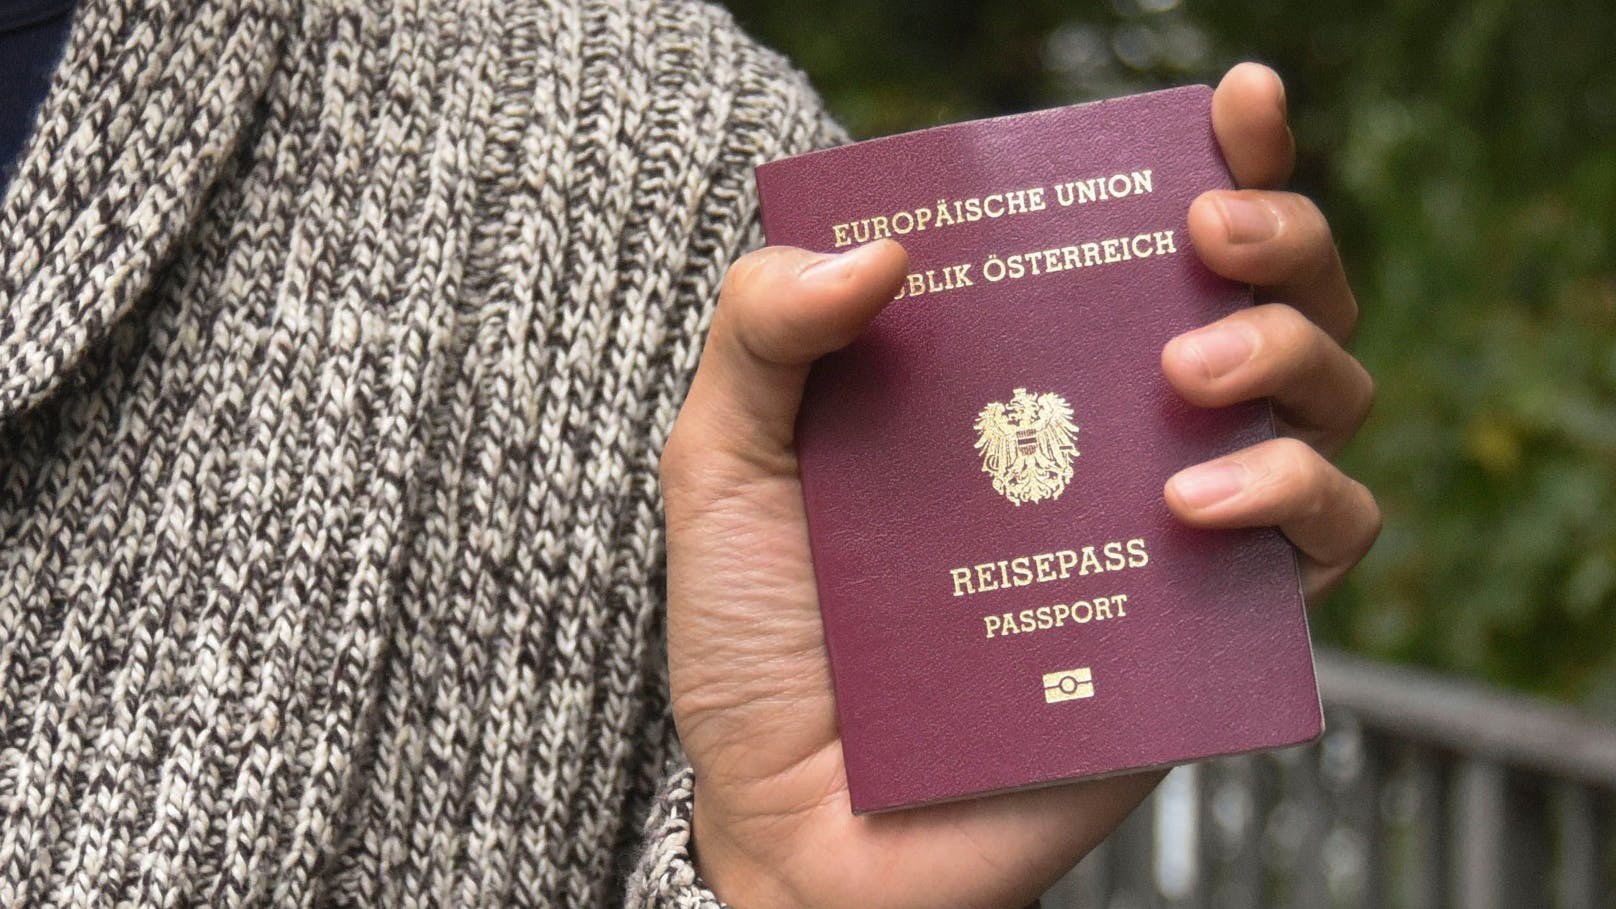 Der österreichische Reisepass wird nach EU-Vorgaben modernisiert.